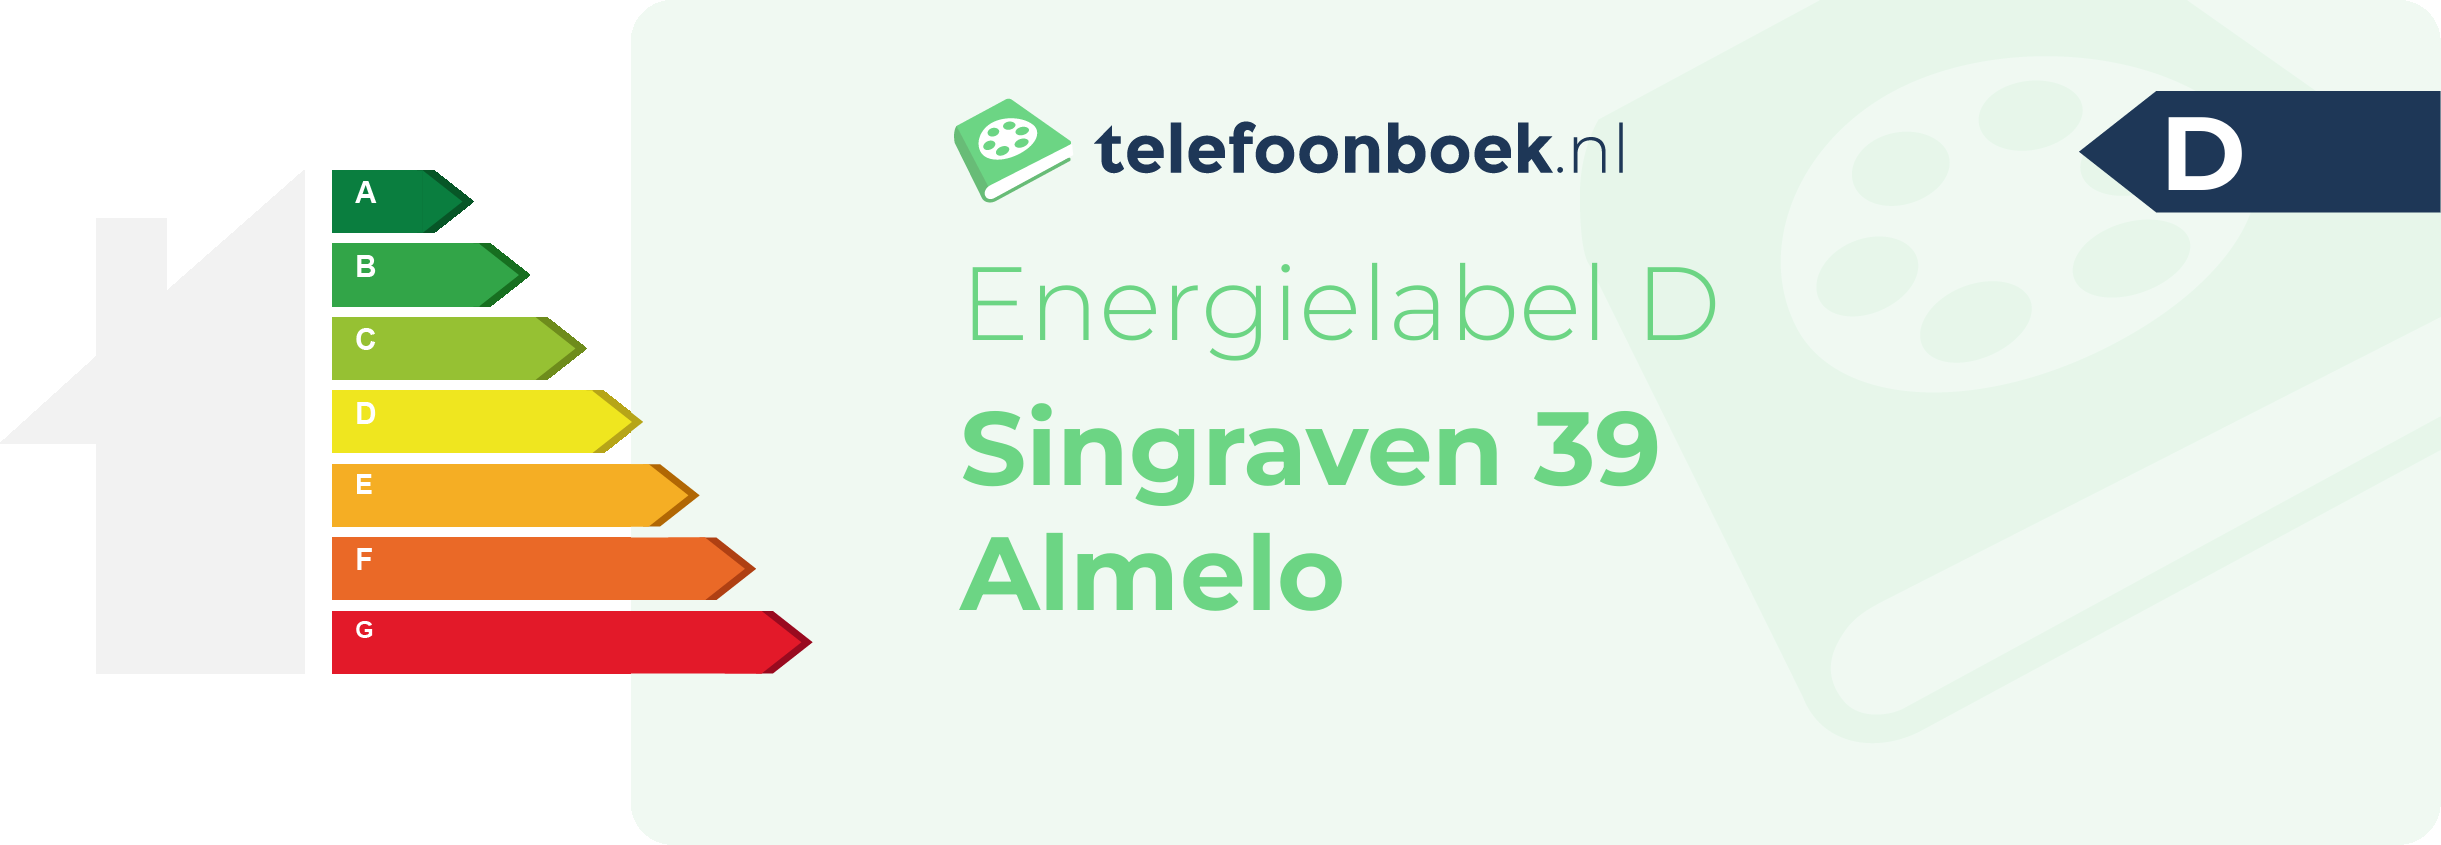 Energielabel Singraven 39 Almelo